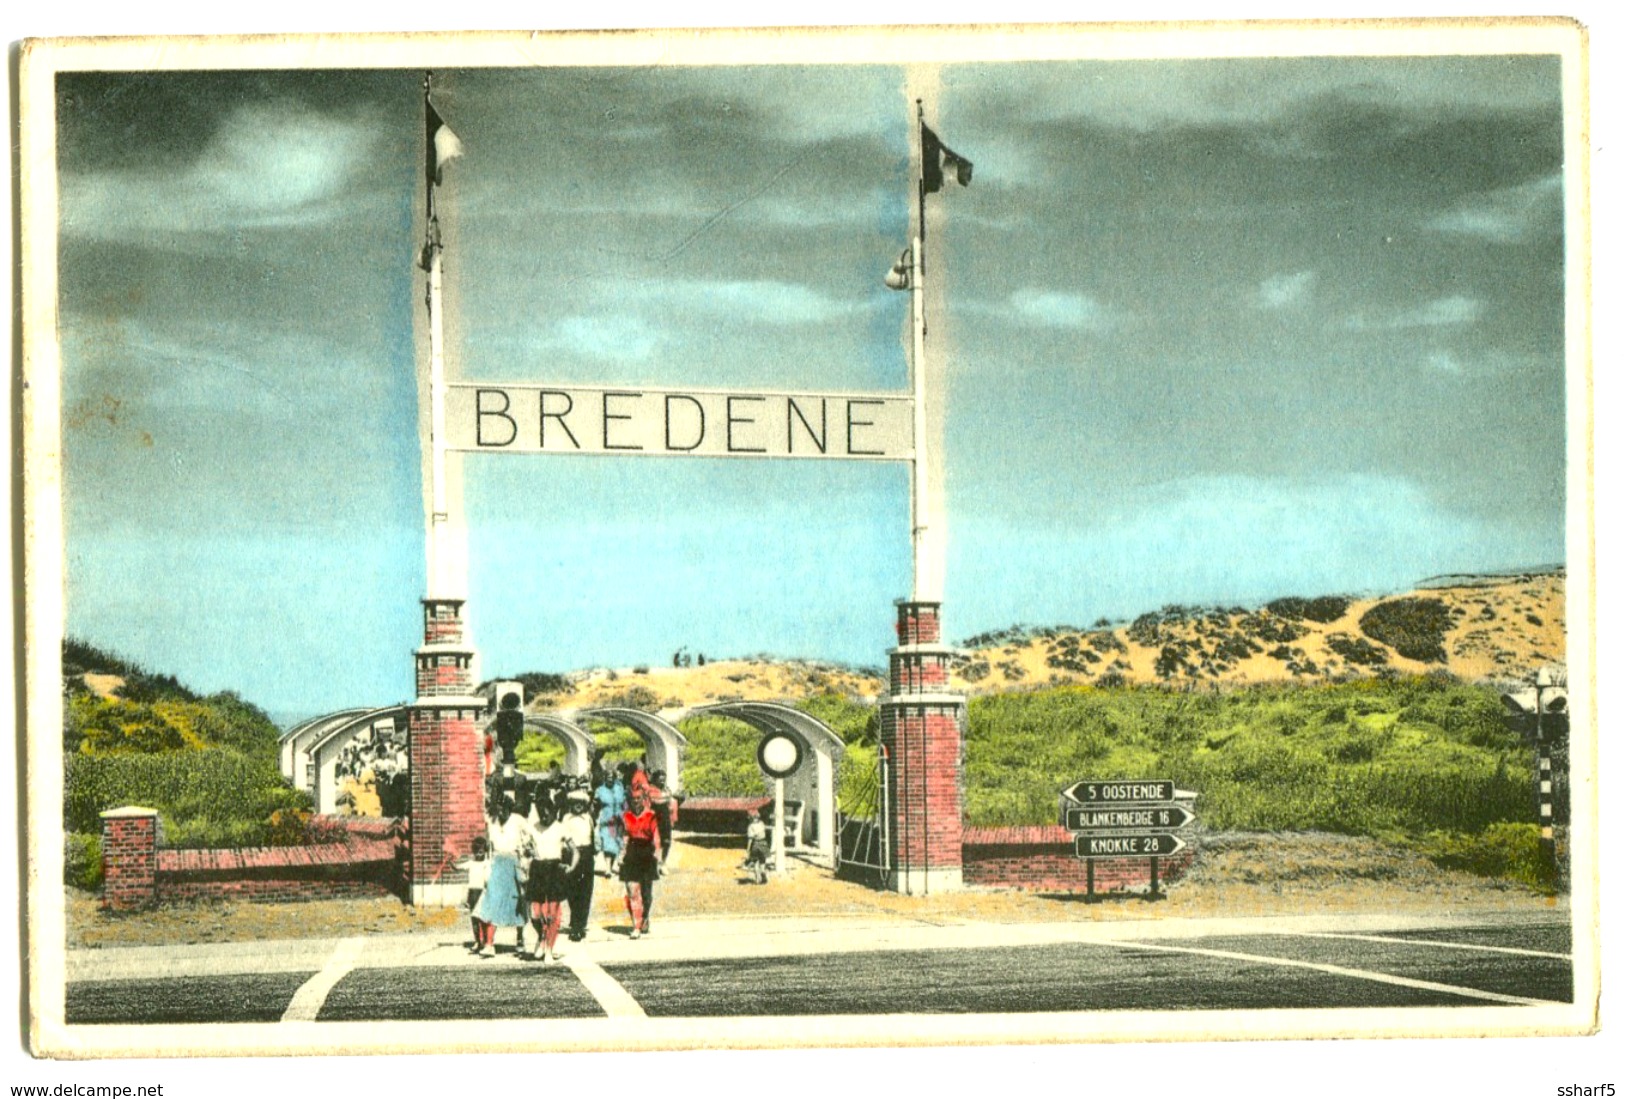 Bredene Breedene S/Mer A/Zee Colour Photo Card 1960 - Bredene